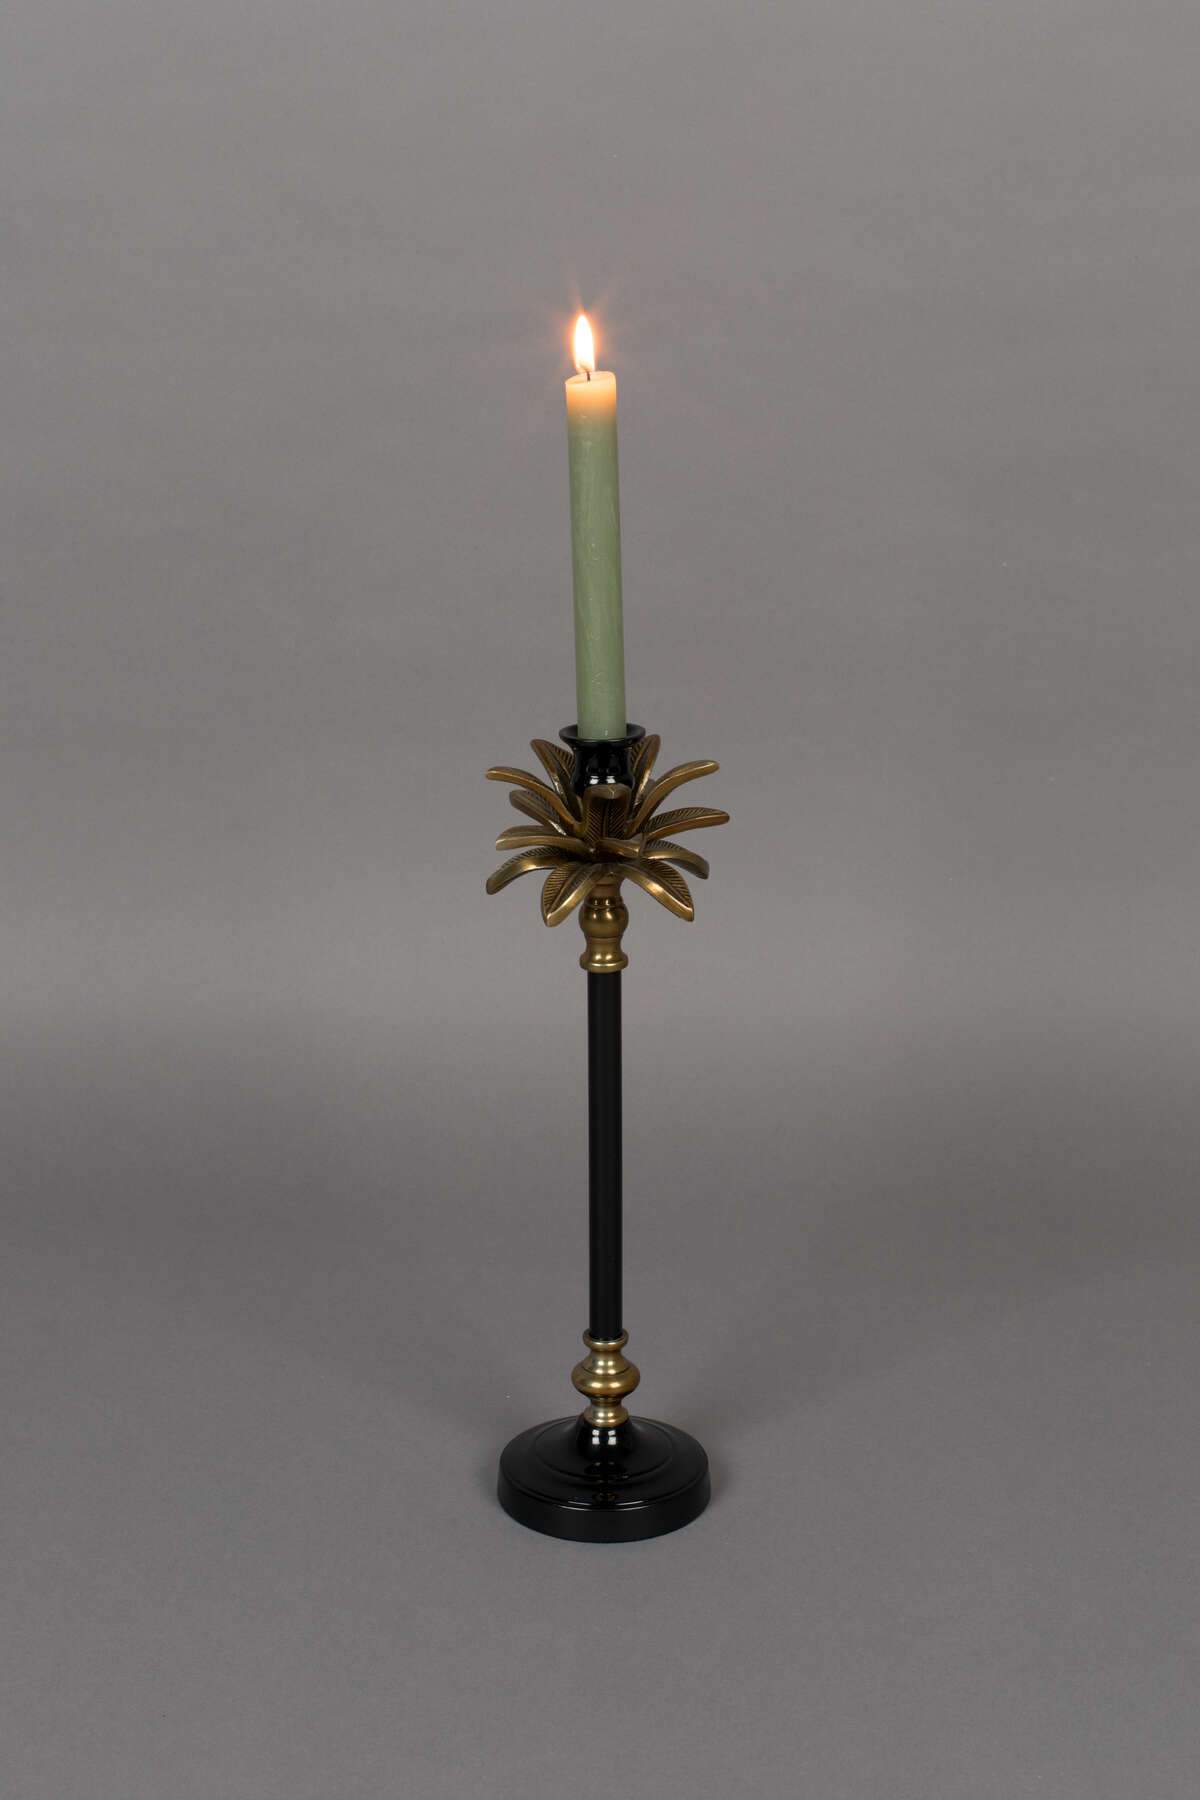 CRESTA candle holder gold, Dutchbone, Eye on Design